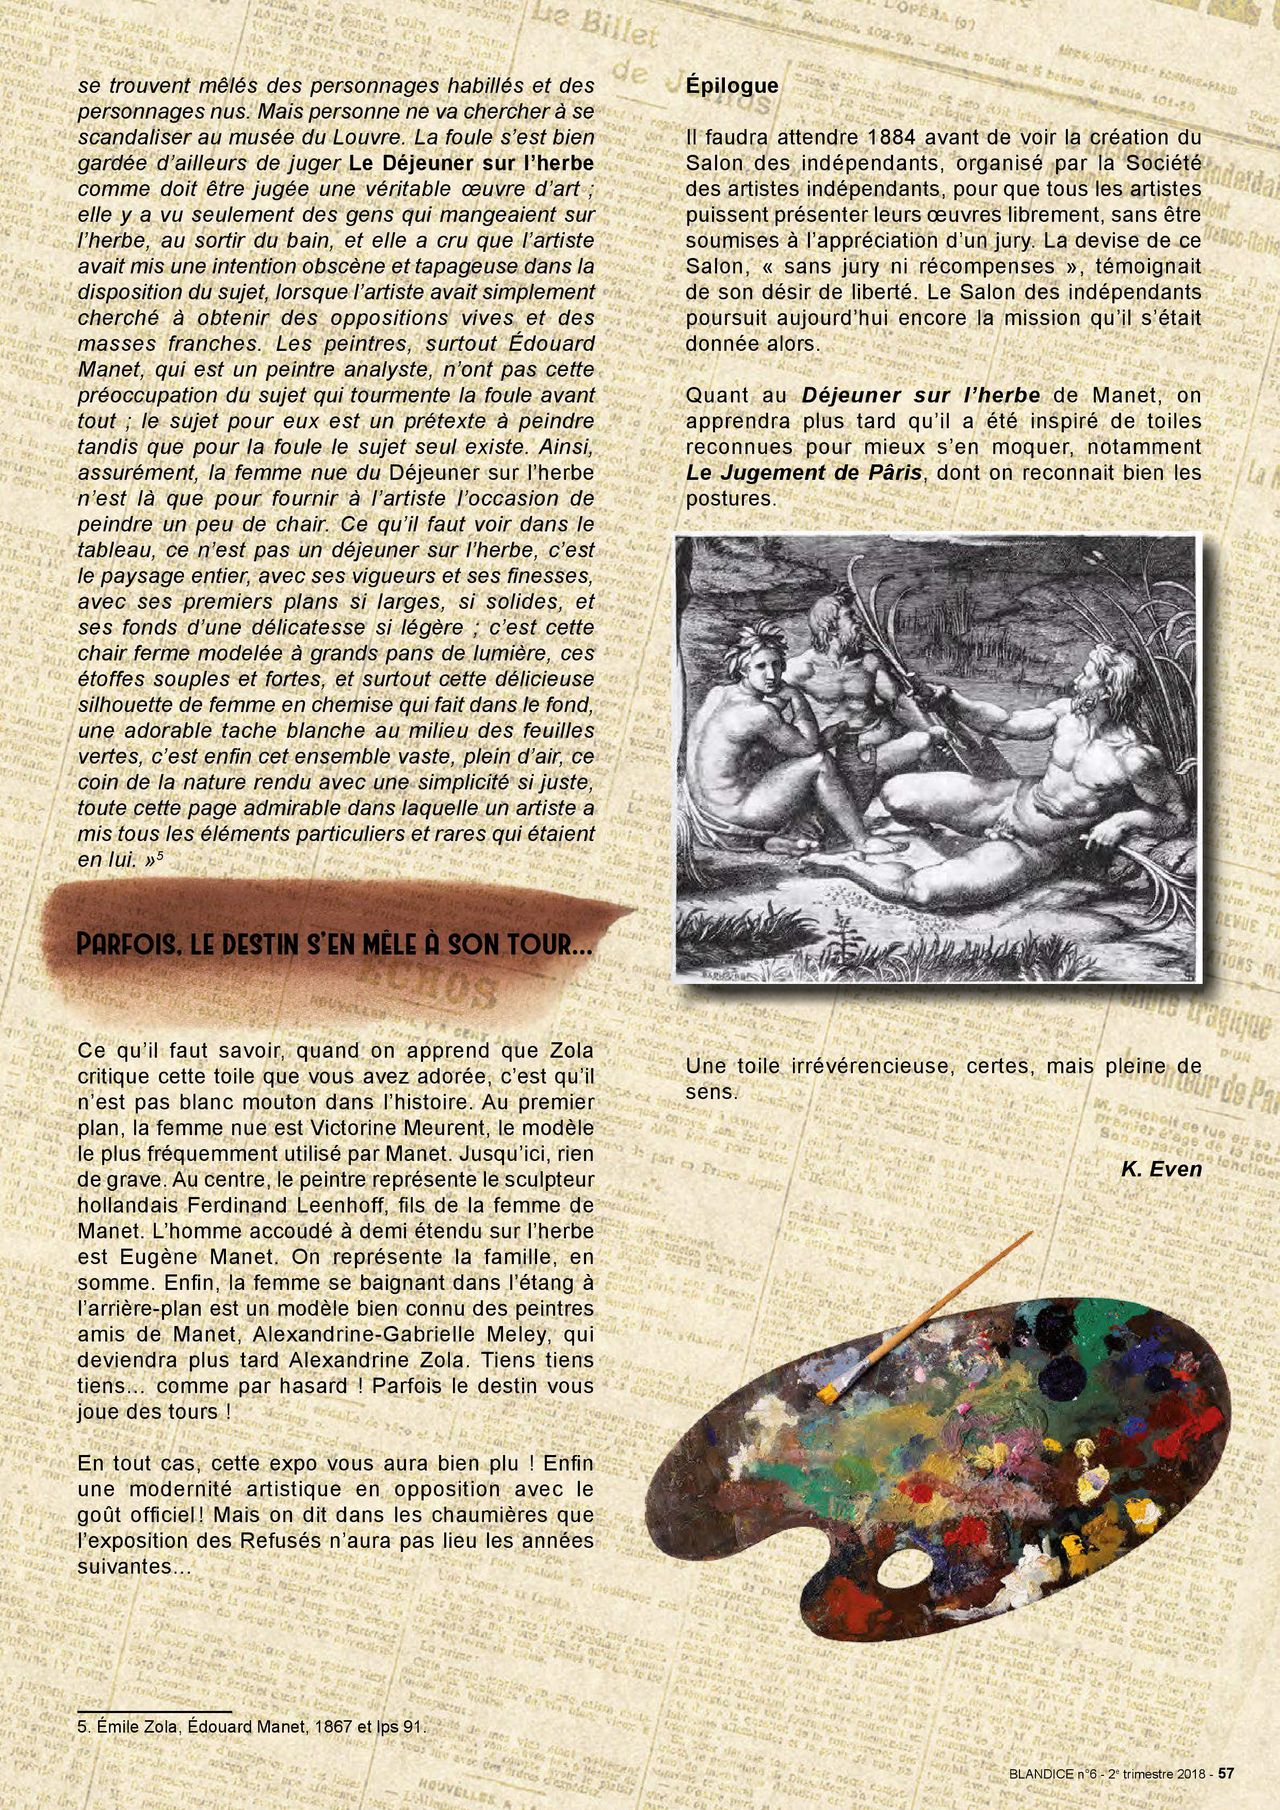 Blandice - 06 - Limpressionnisme dans la bd numero d'image 58